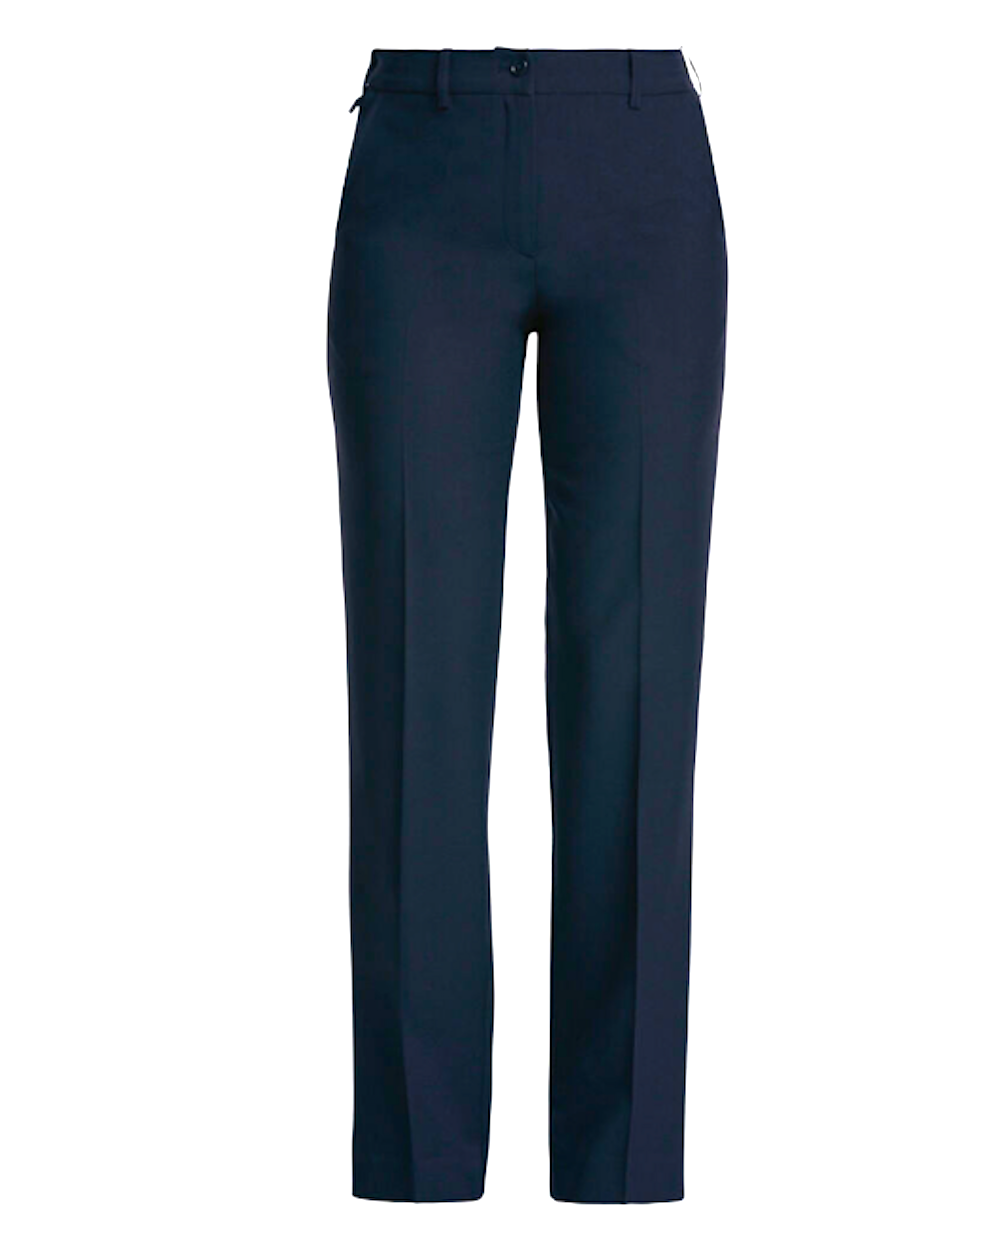 Women's Plus Size Pants & Plus Size Uniform Pants | Aeropostale